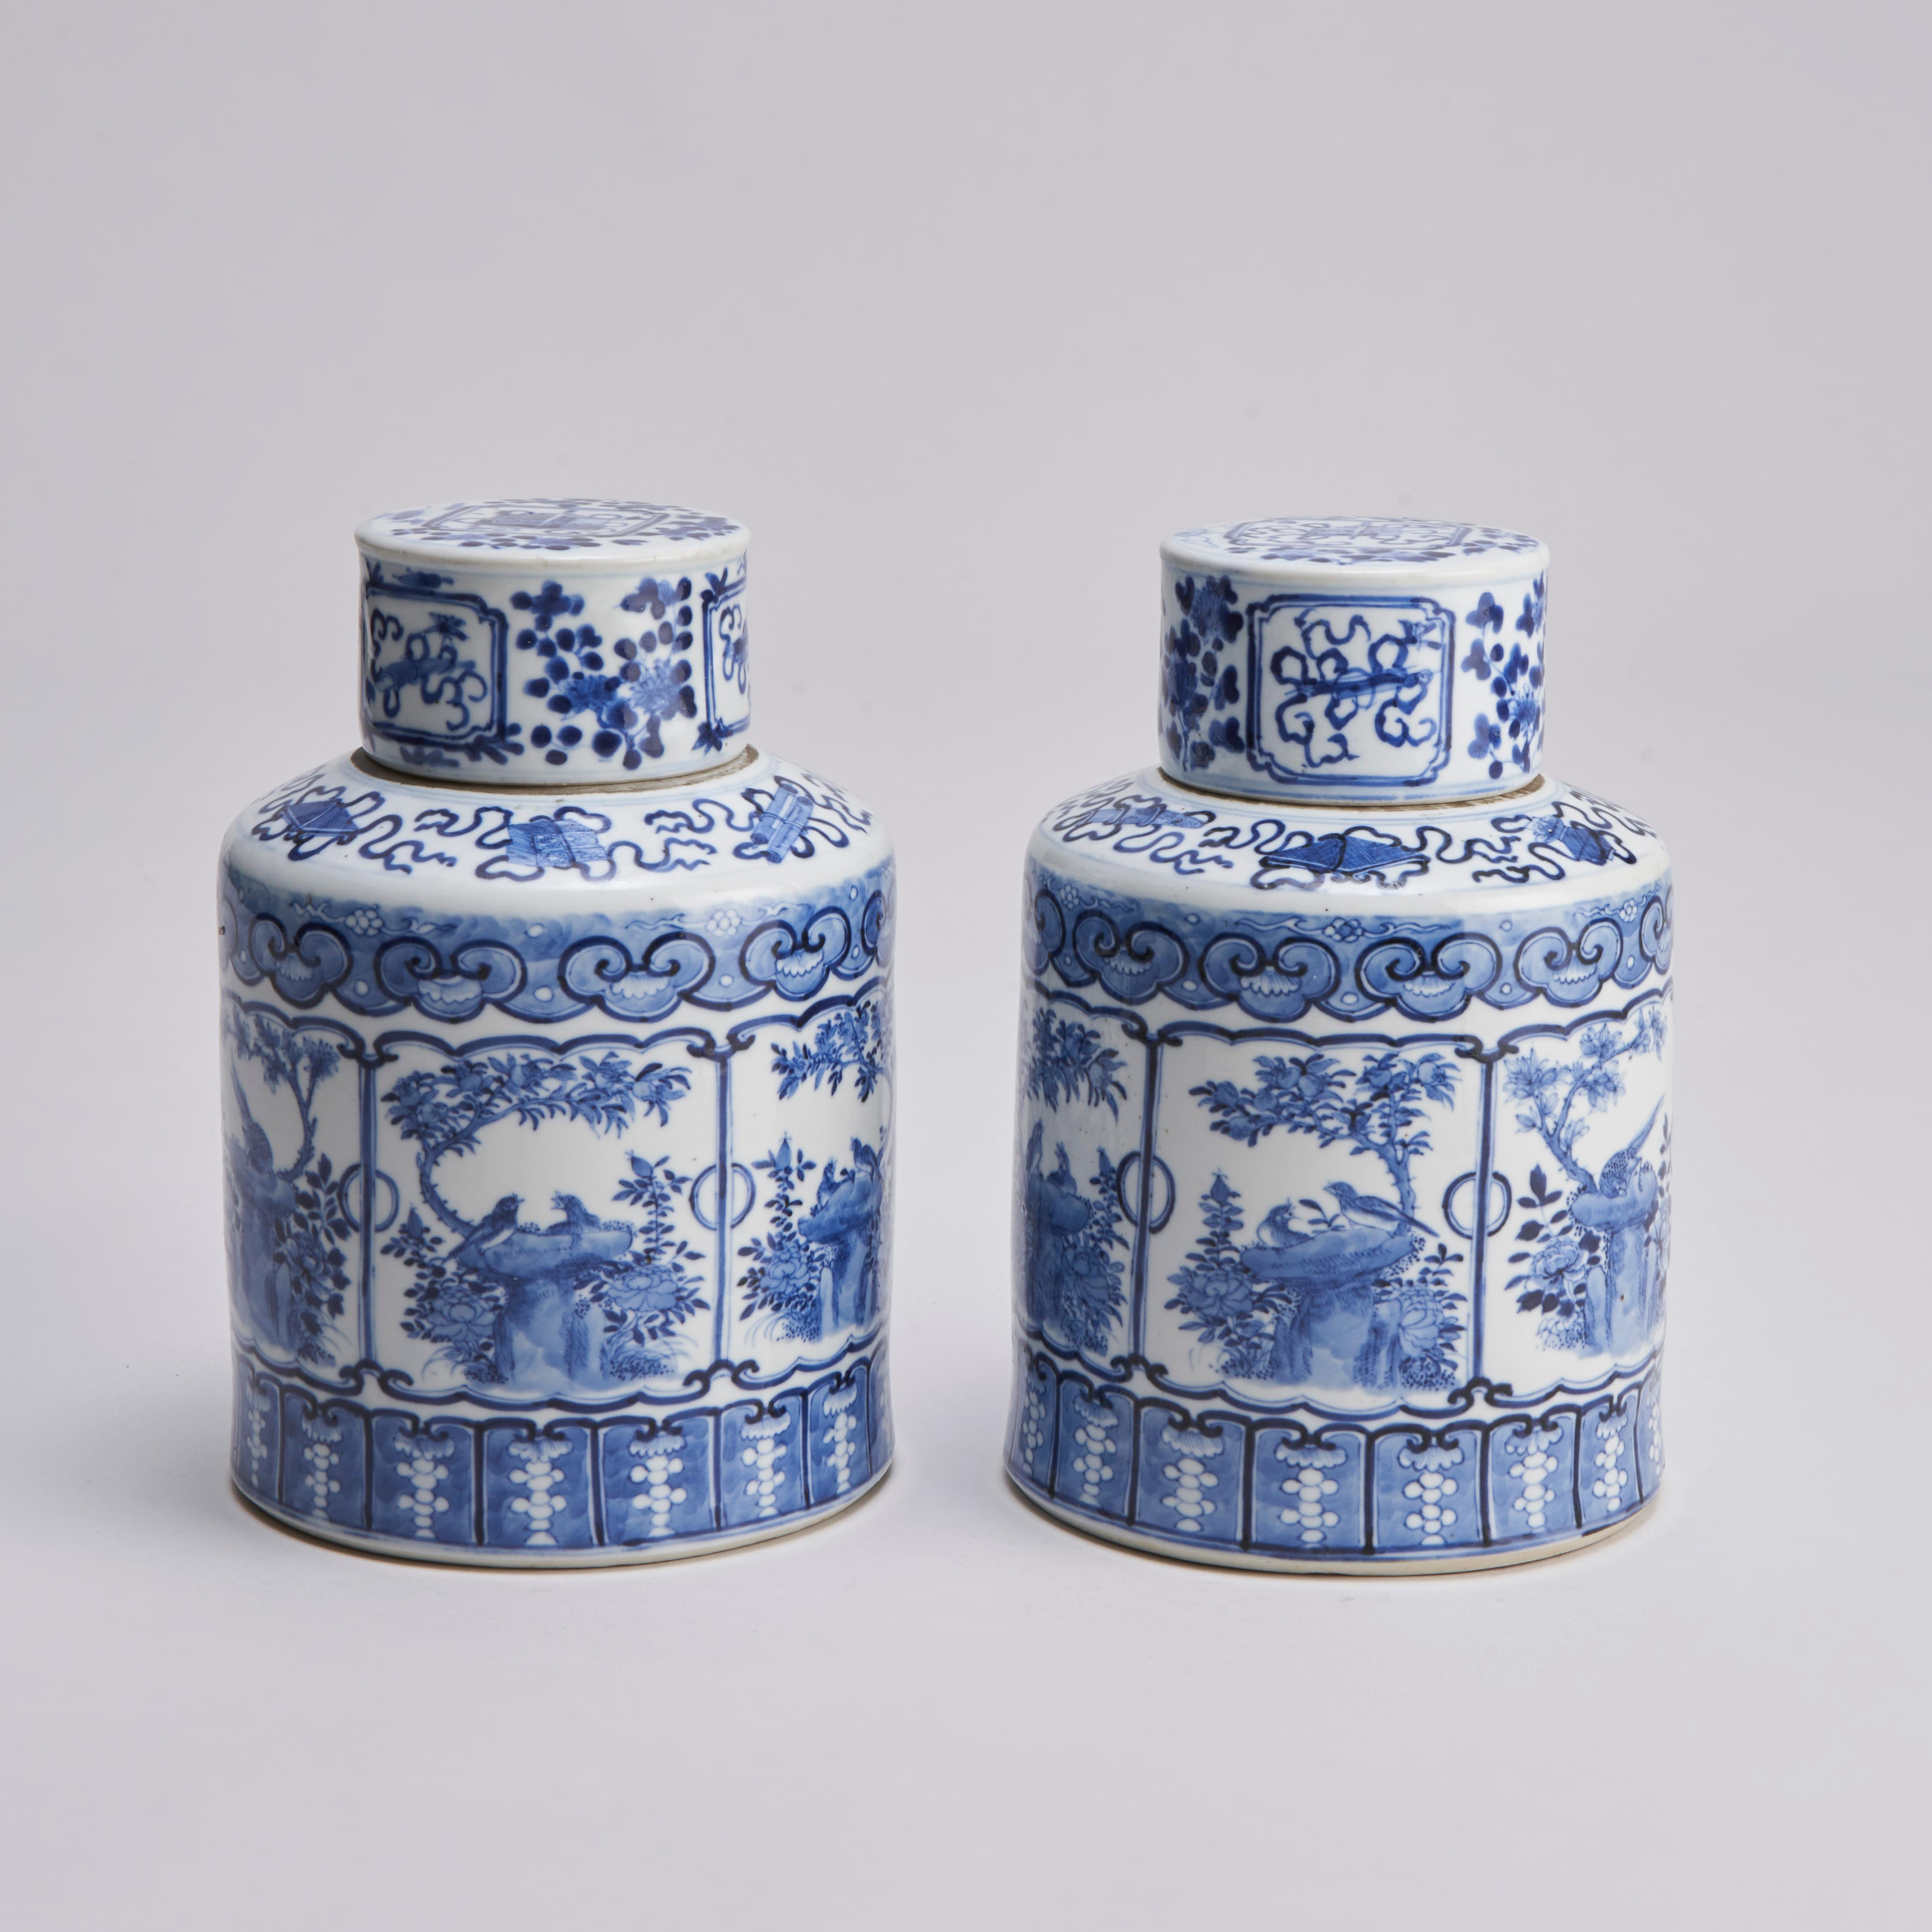 Issue de notre collection de porcelaine d'exportation chinoise bleu et blanc du XIXe siècle, cette paire de boîtes circulaires et de couvercles présente des panneaux finement peints d'oiseaux sur leurs nids avec une bordure Ruyi et une décoration